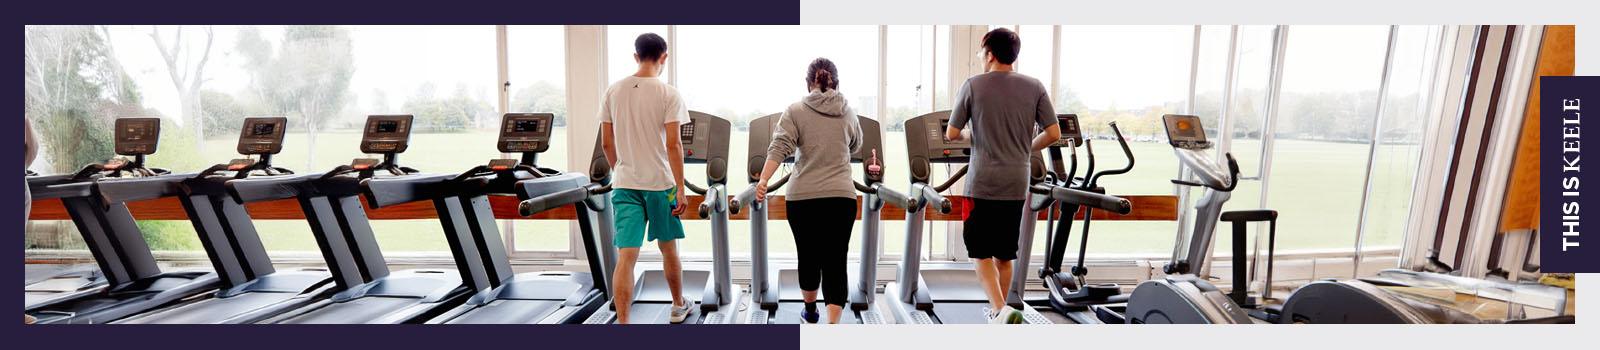 Three people using treadmills at Keele University's gym.